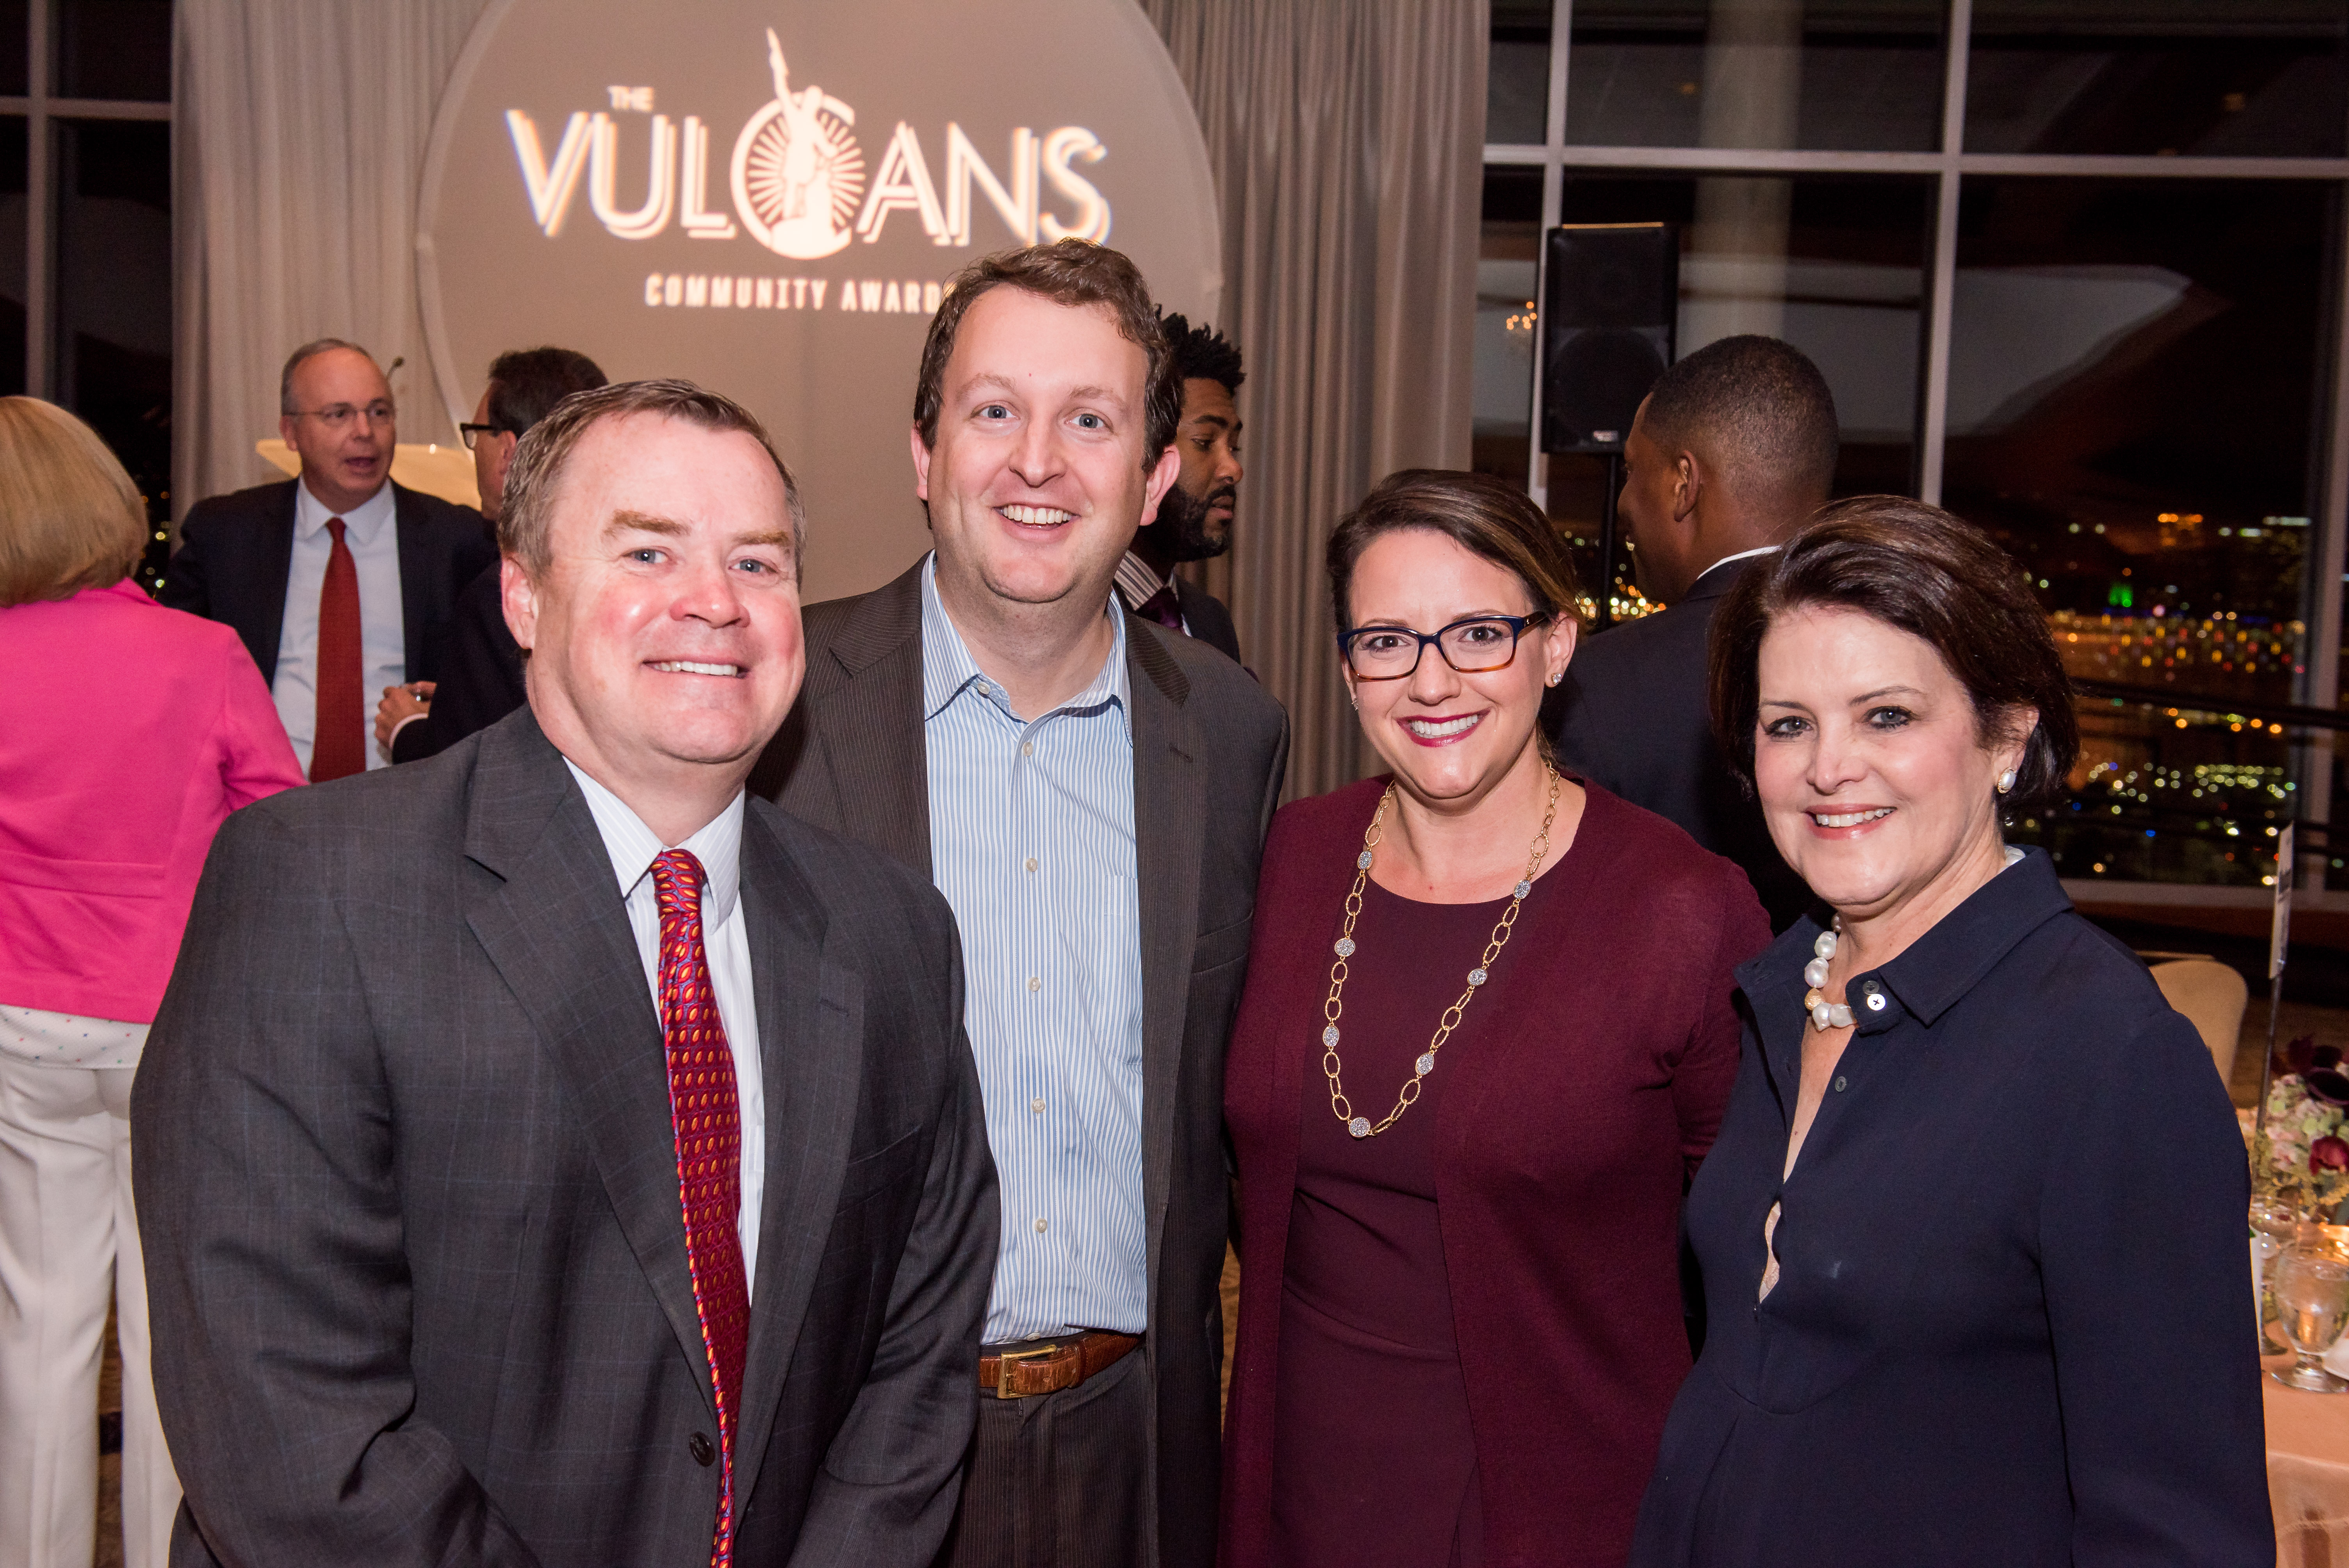 Group at Vulcan Community Awards